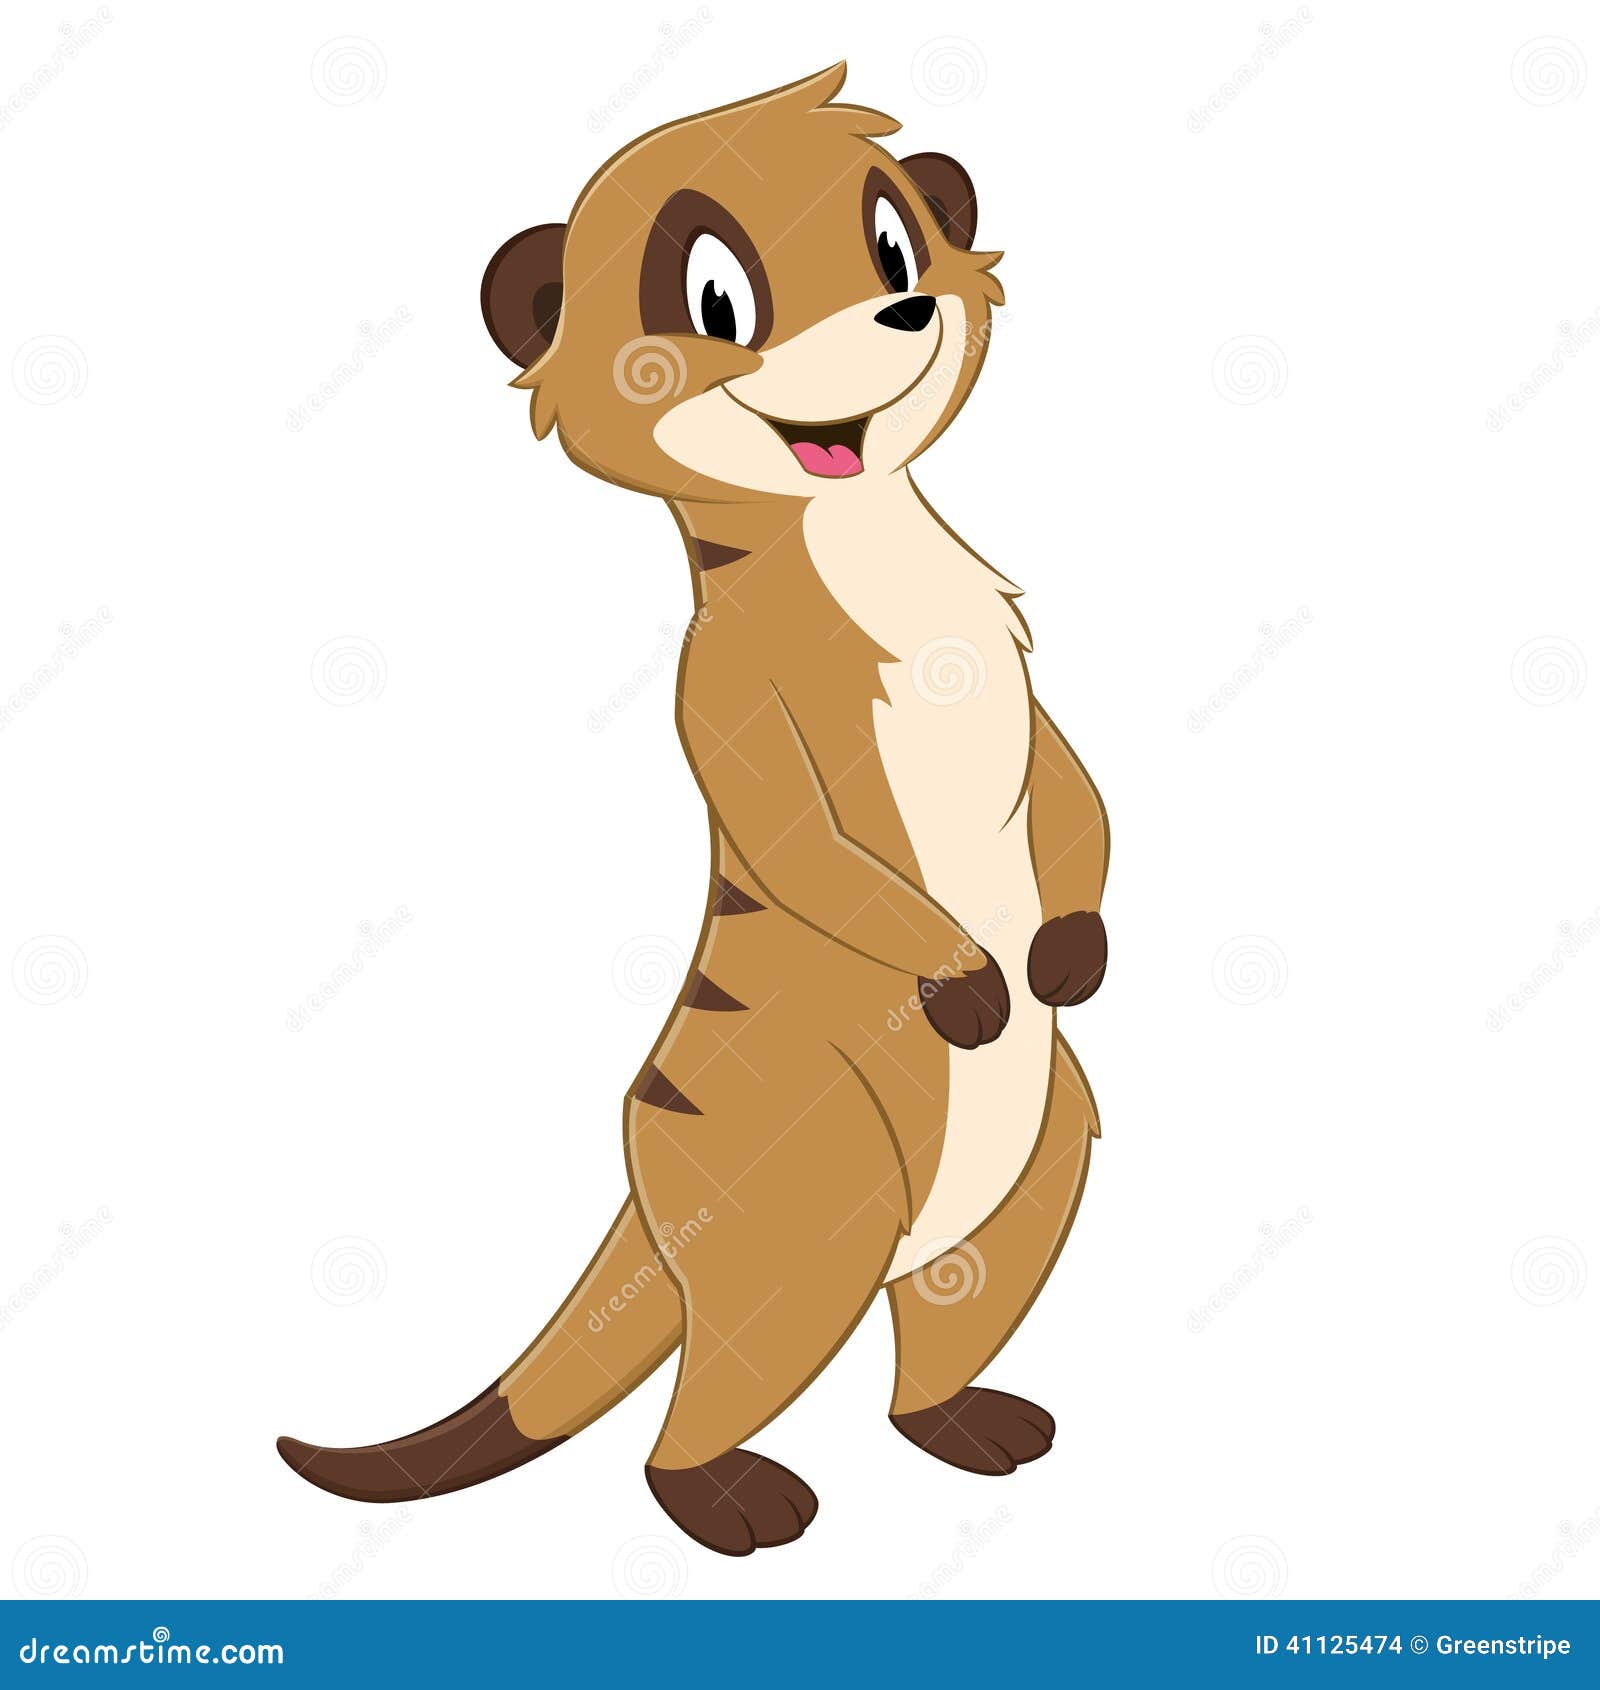 Vector illustration of a standing cartoon meerkat.